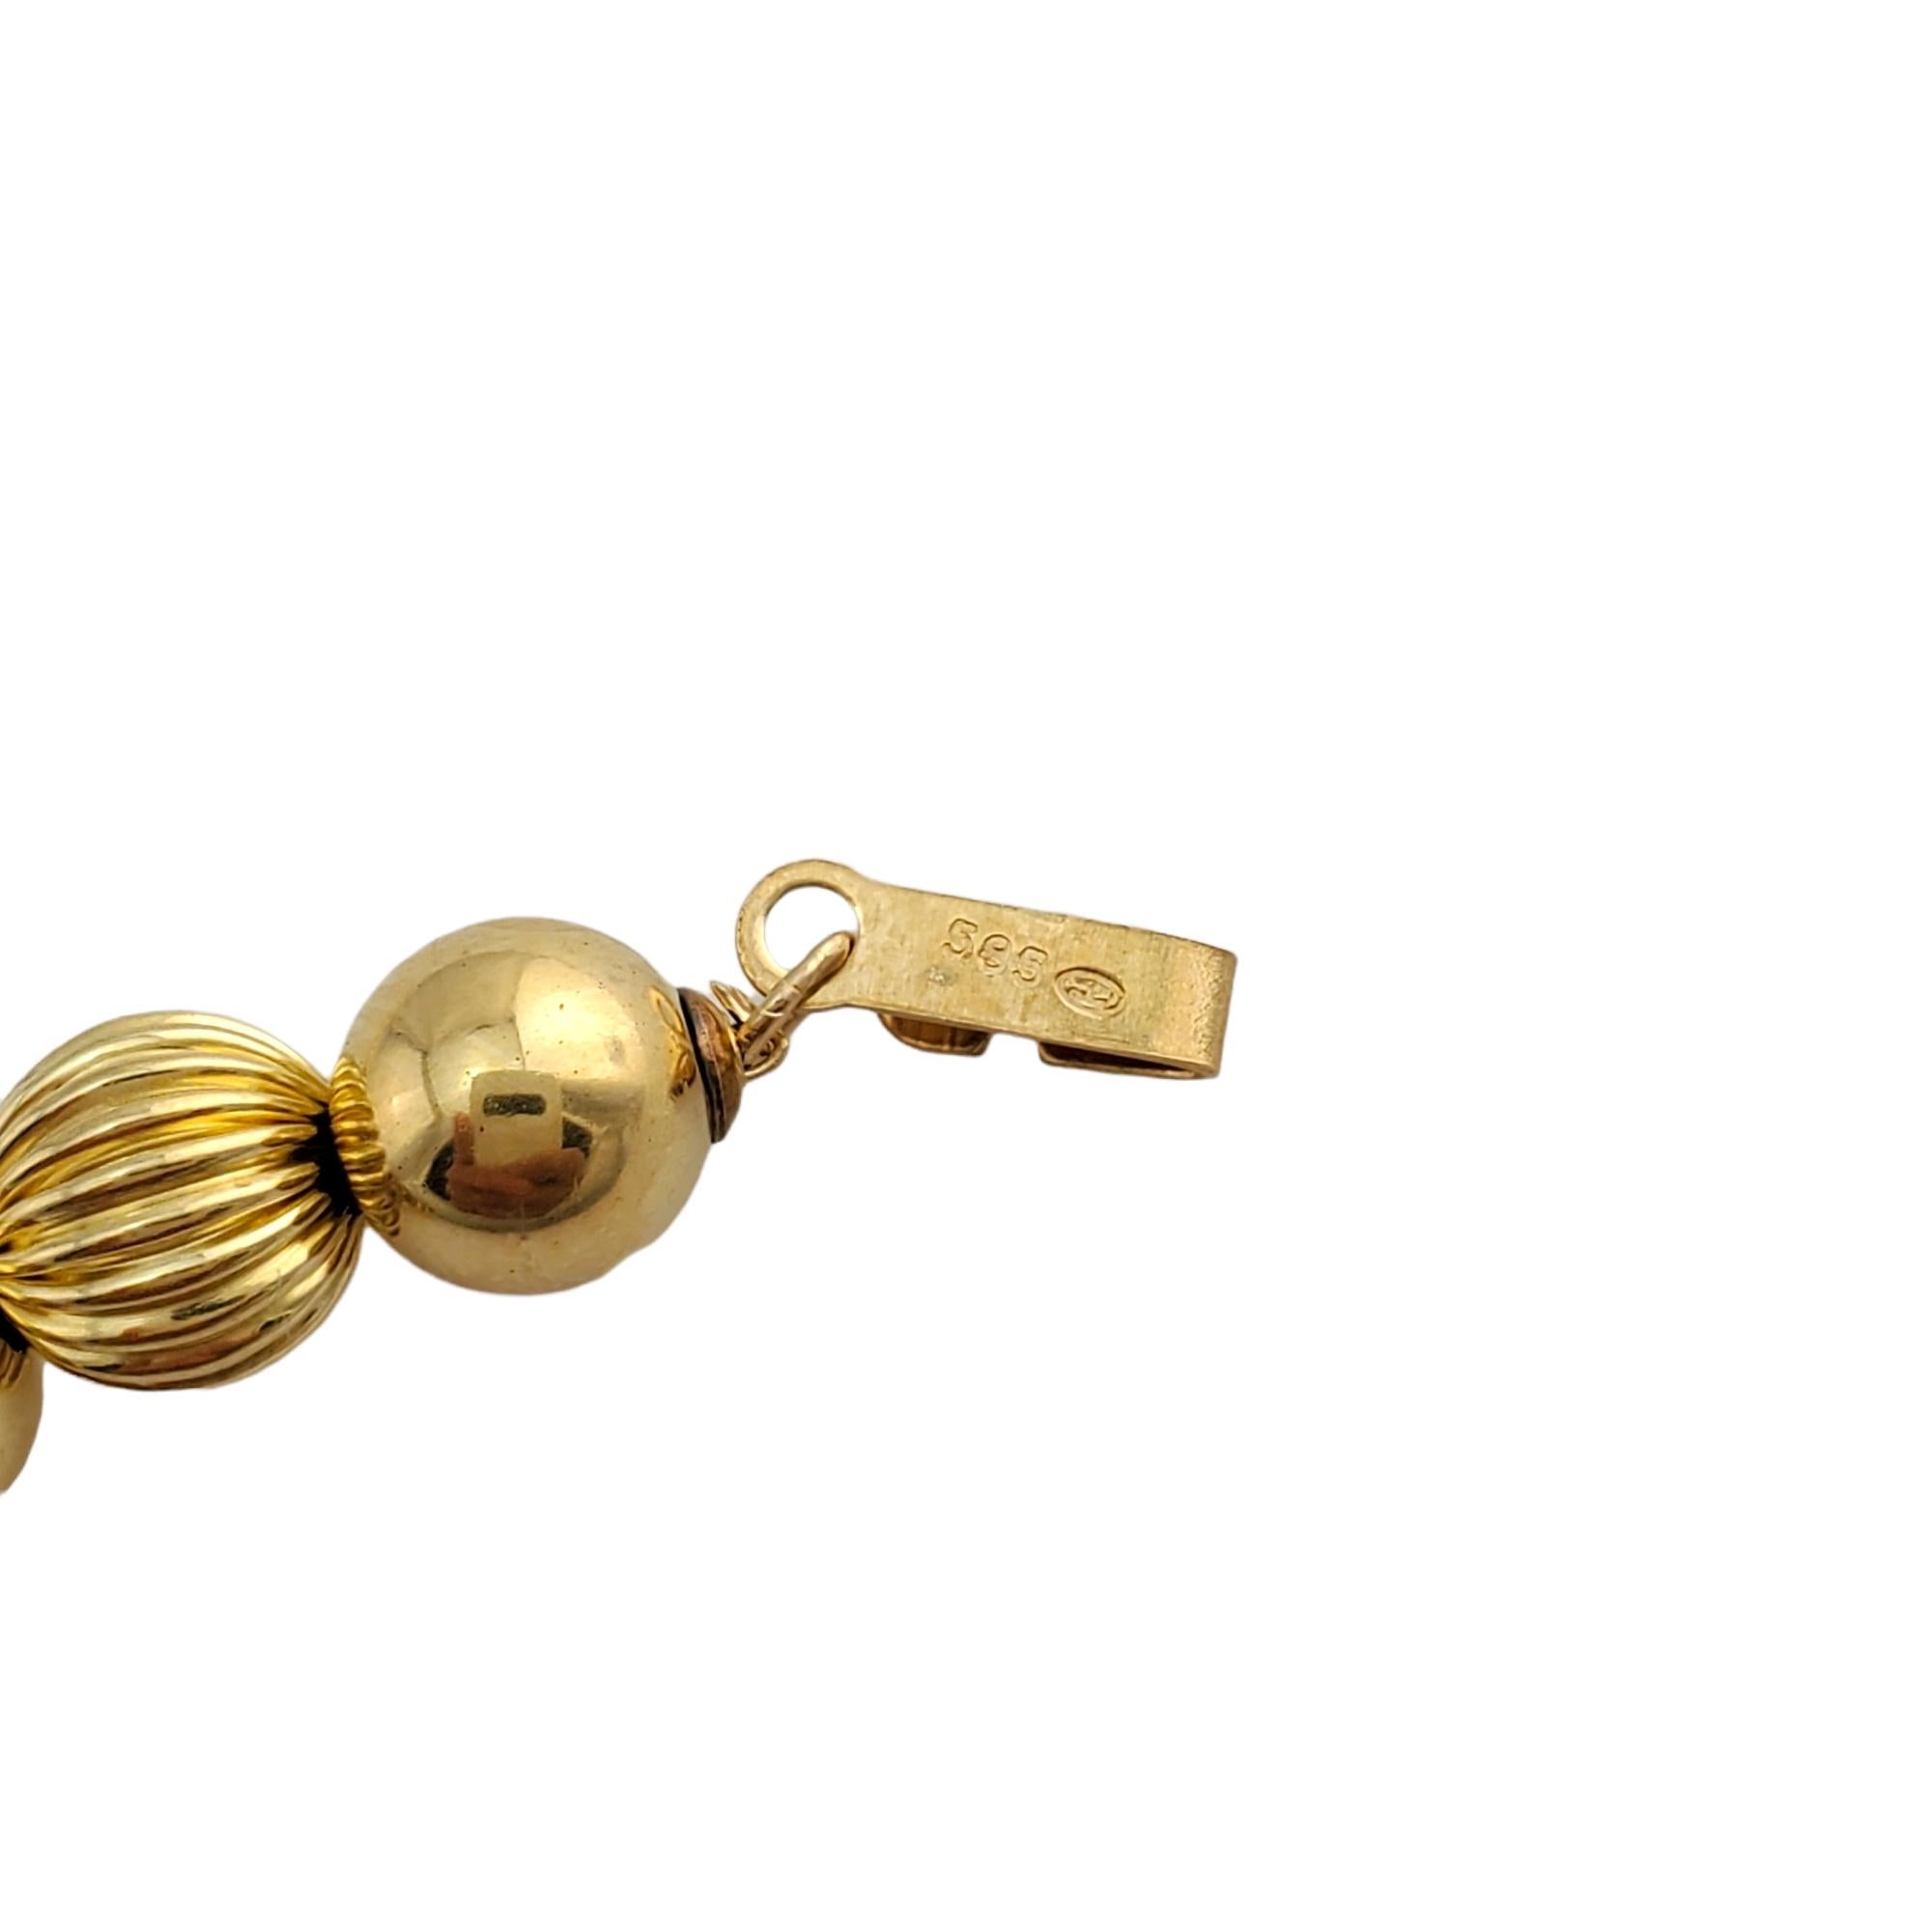 14K Gelbgold Perlenkette

Dieses Stück besteht aus einer Halskette mit gegliederten Perlen aus 14K Gelbgold in verschiedenen Größen.

Kettenlänge: 30 Zoll.

Gewicht: 17,3 gr/ 11,1 dwt

Punze: 585

Sehr guter Zustand, professionell poliert.

Wird in